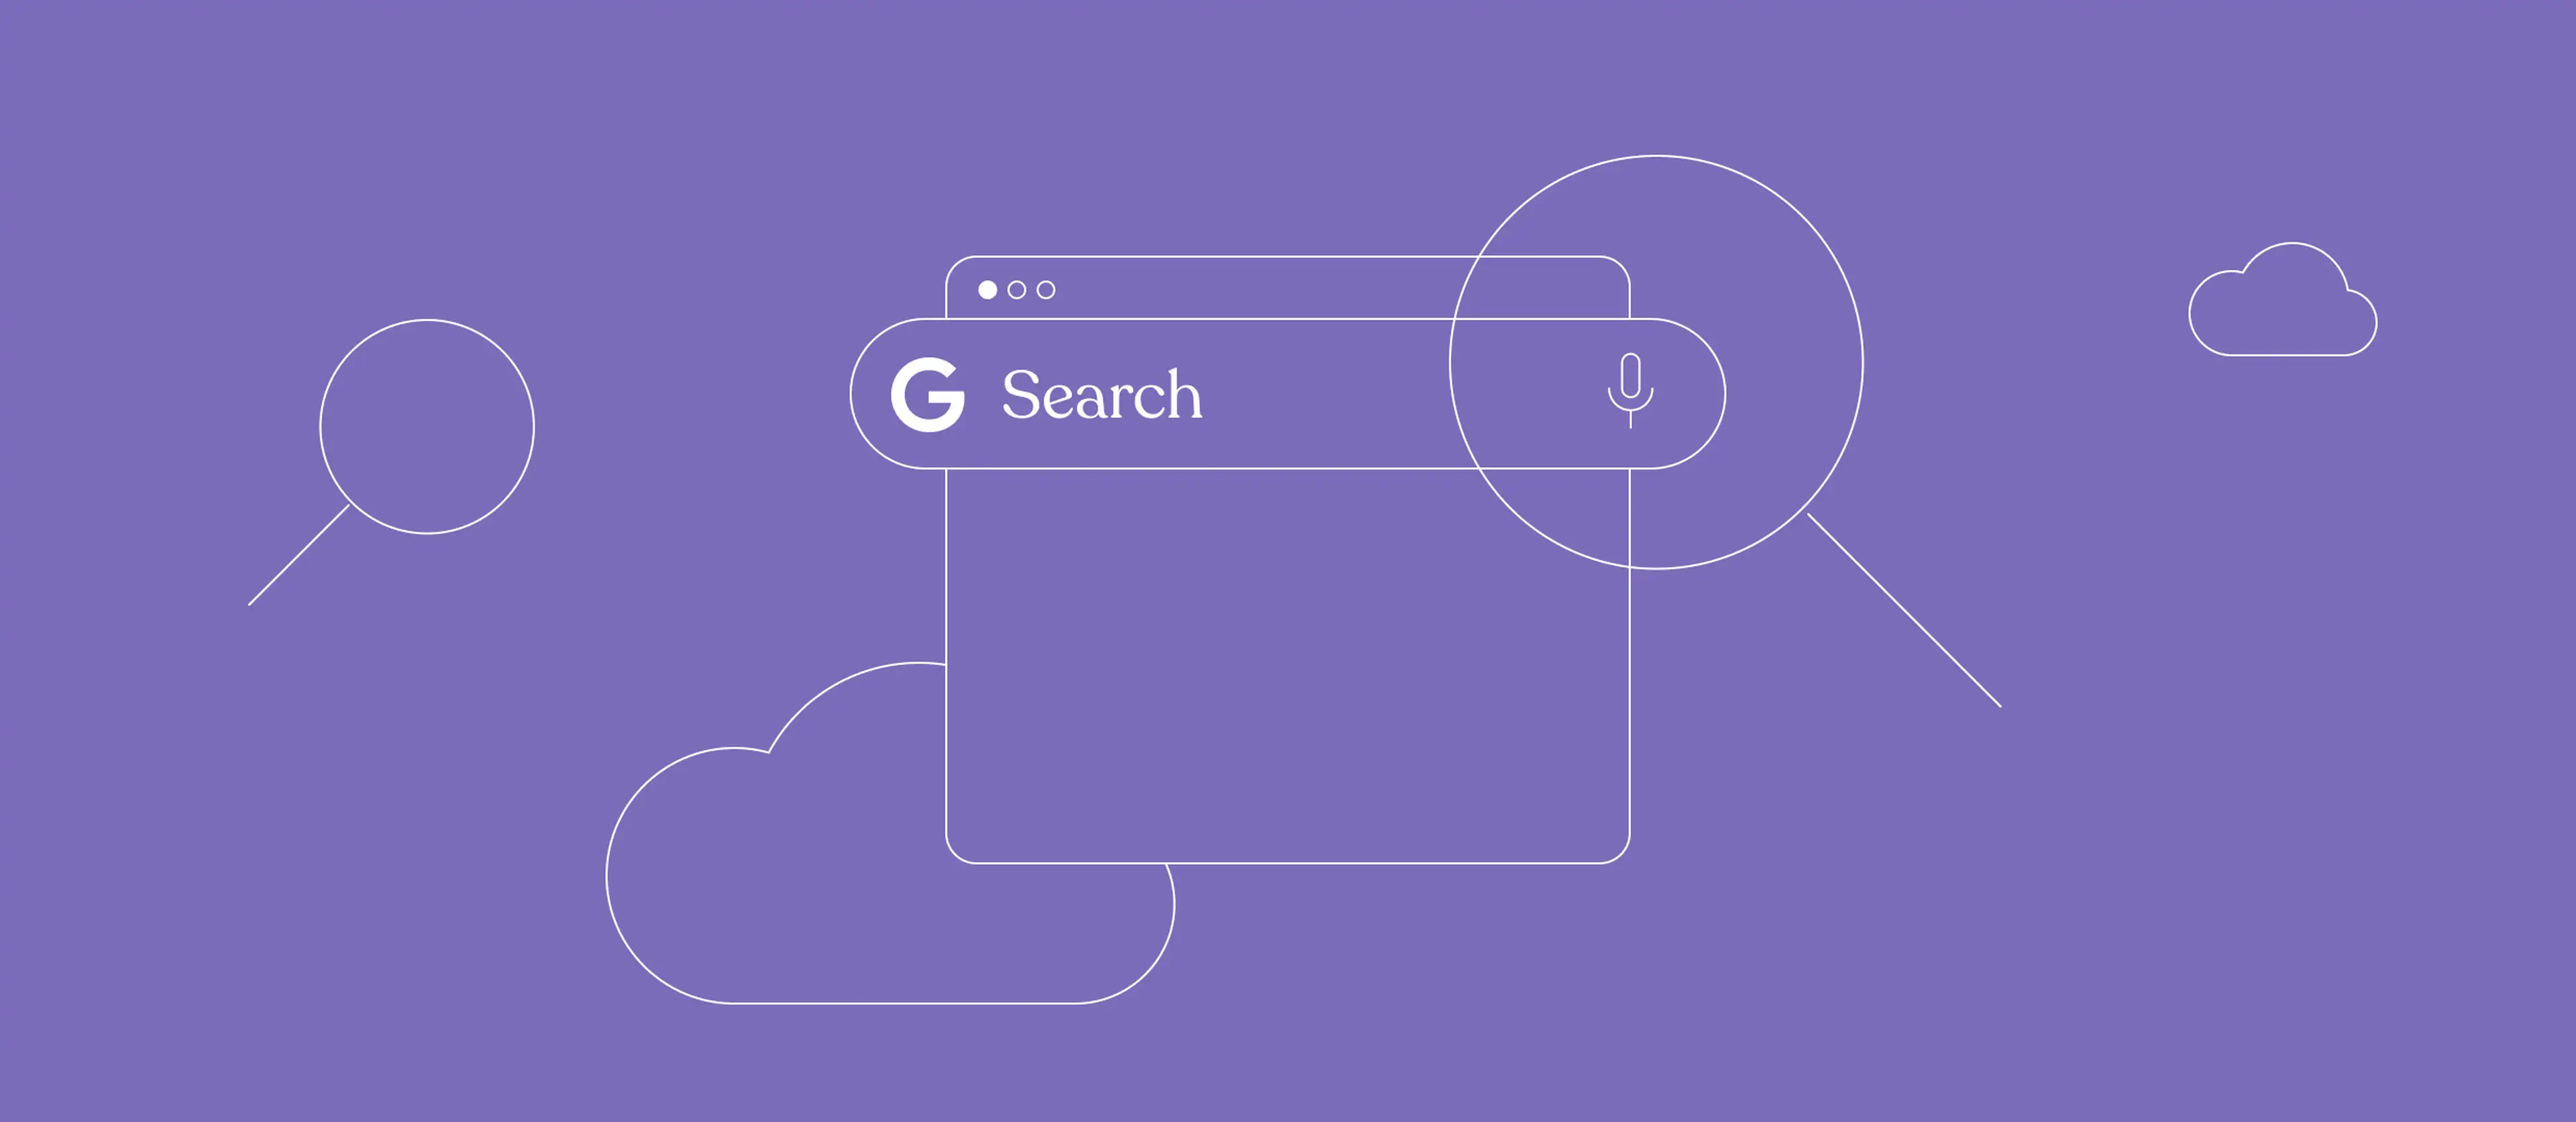 Google Search Console graphic in purple